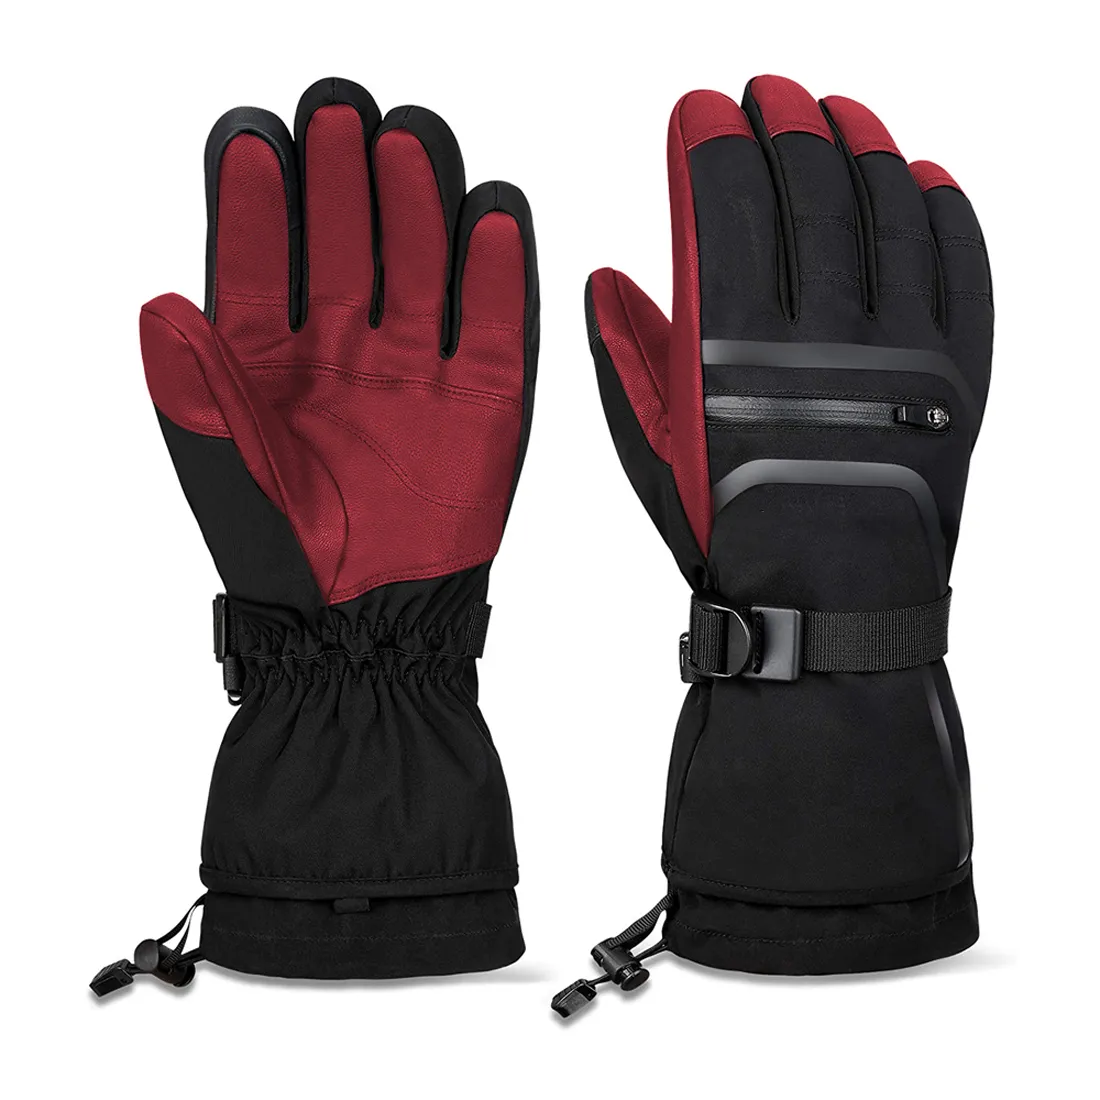 Изолированные дышащие перчатки от производителя, водонепроницаемые влагоотводящие лыжные перчатки, зимние теплые перчатки, для защиты, обслуживание oem